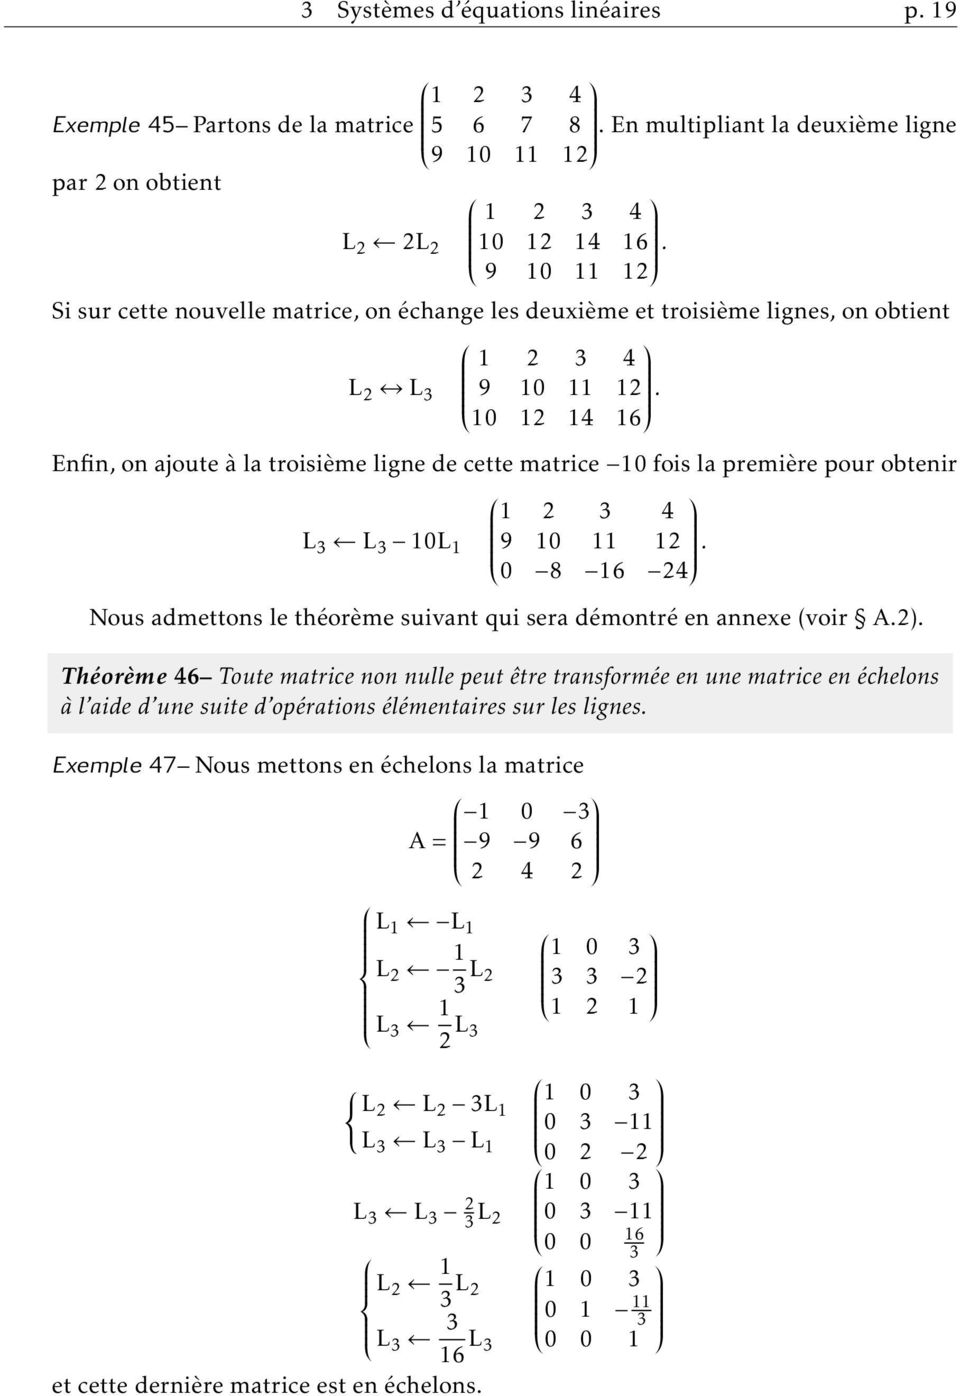 obtenir 1 2 3 4 L 3 L 3 10L 1 9 10 11 12 0 8 16 24 Nous admettons le théorème suivant qui sera démontré en annexe (voir A2) Théorème 46 Toute matrice non nulle peut être transformée en une matrice en